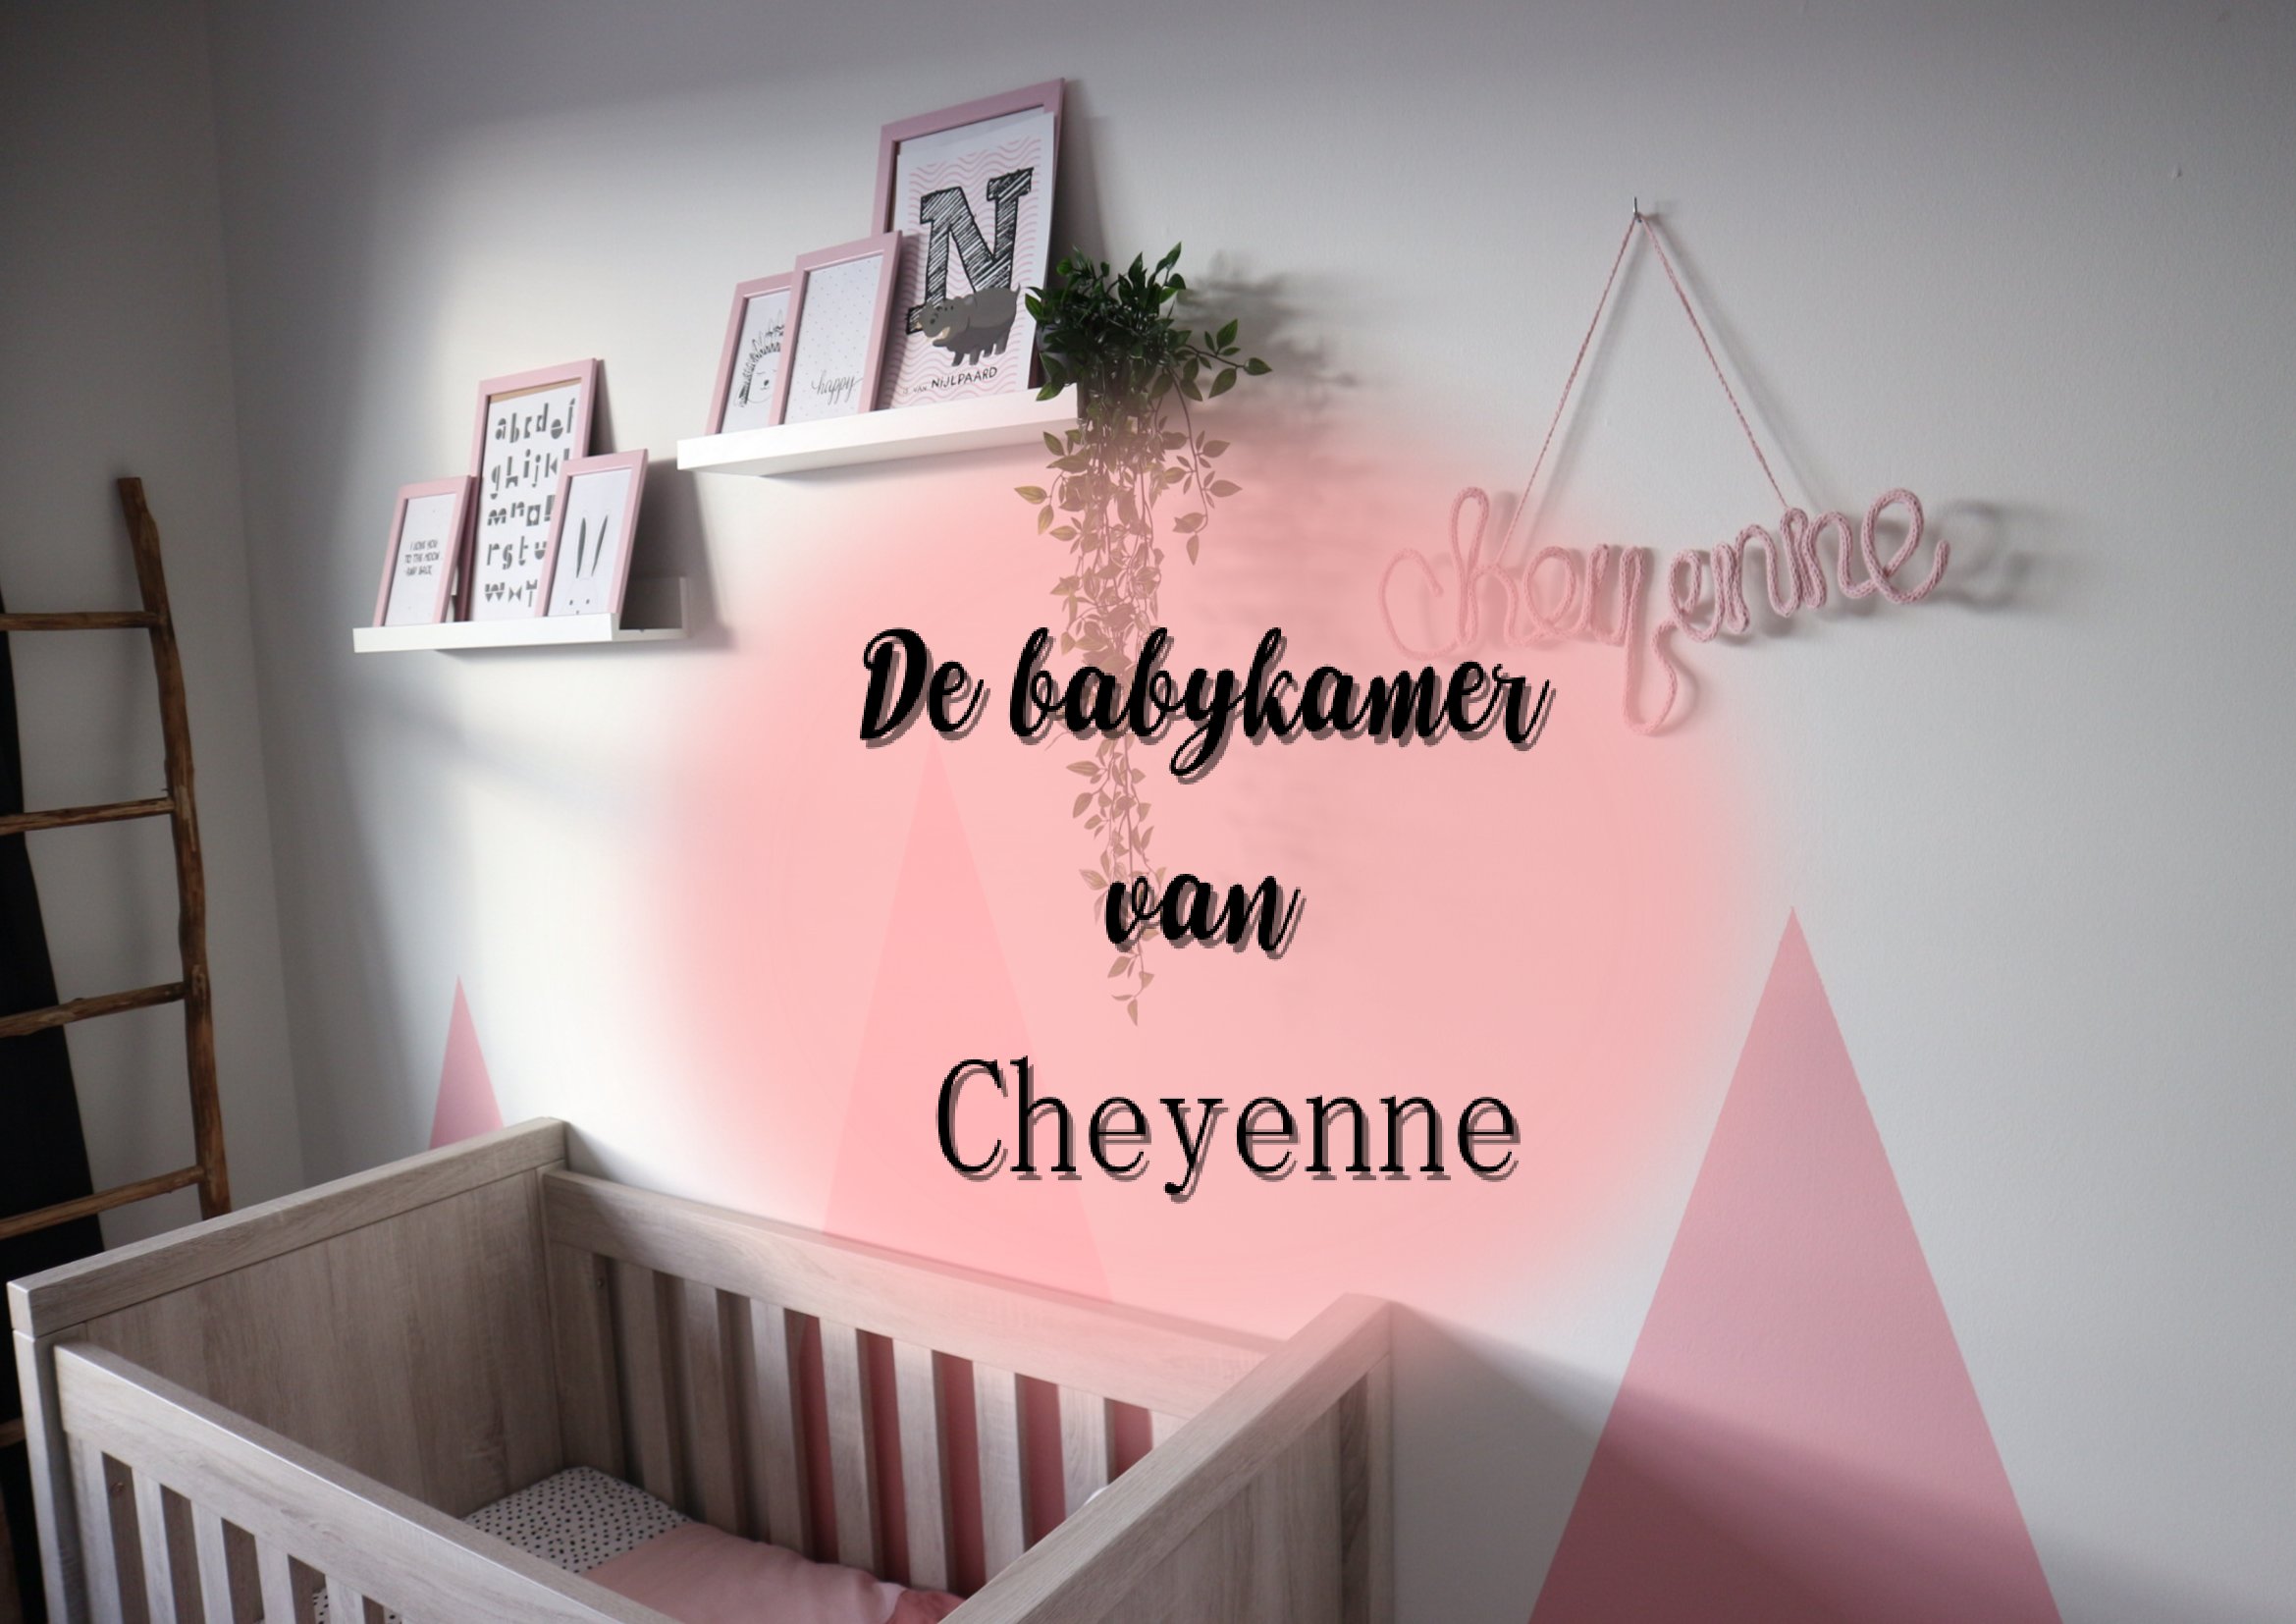 De babykamer van.. Cheyenne